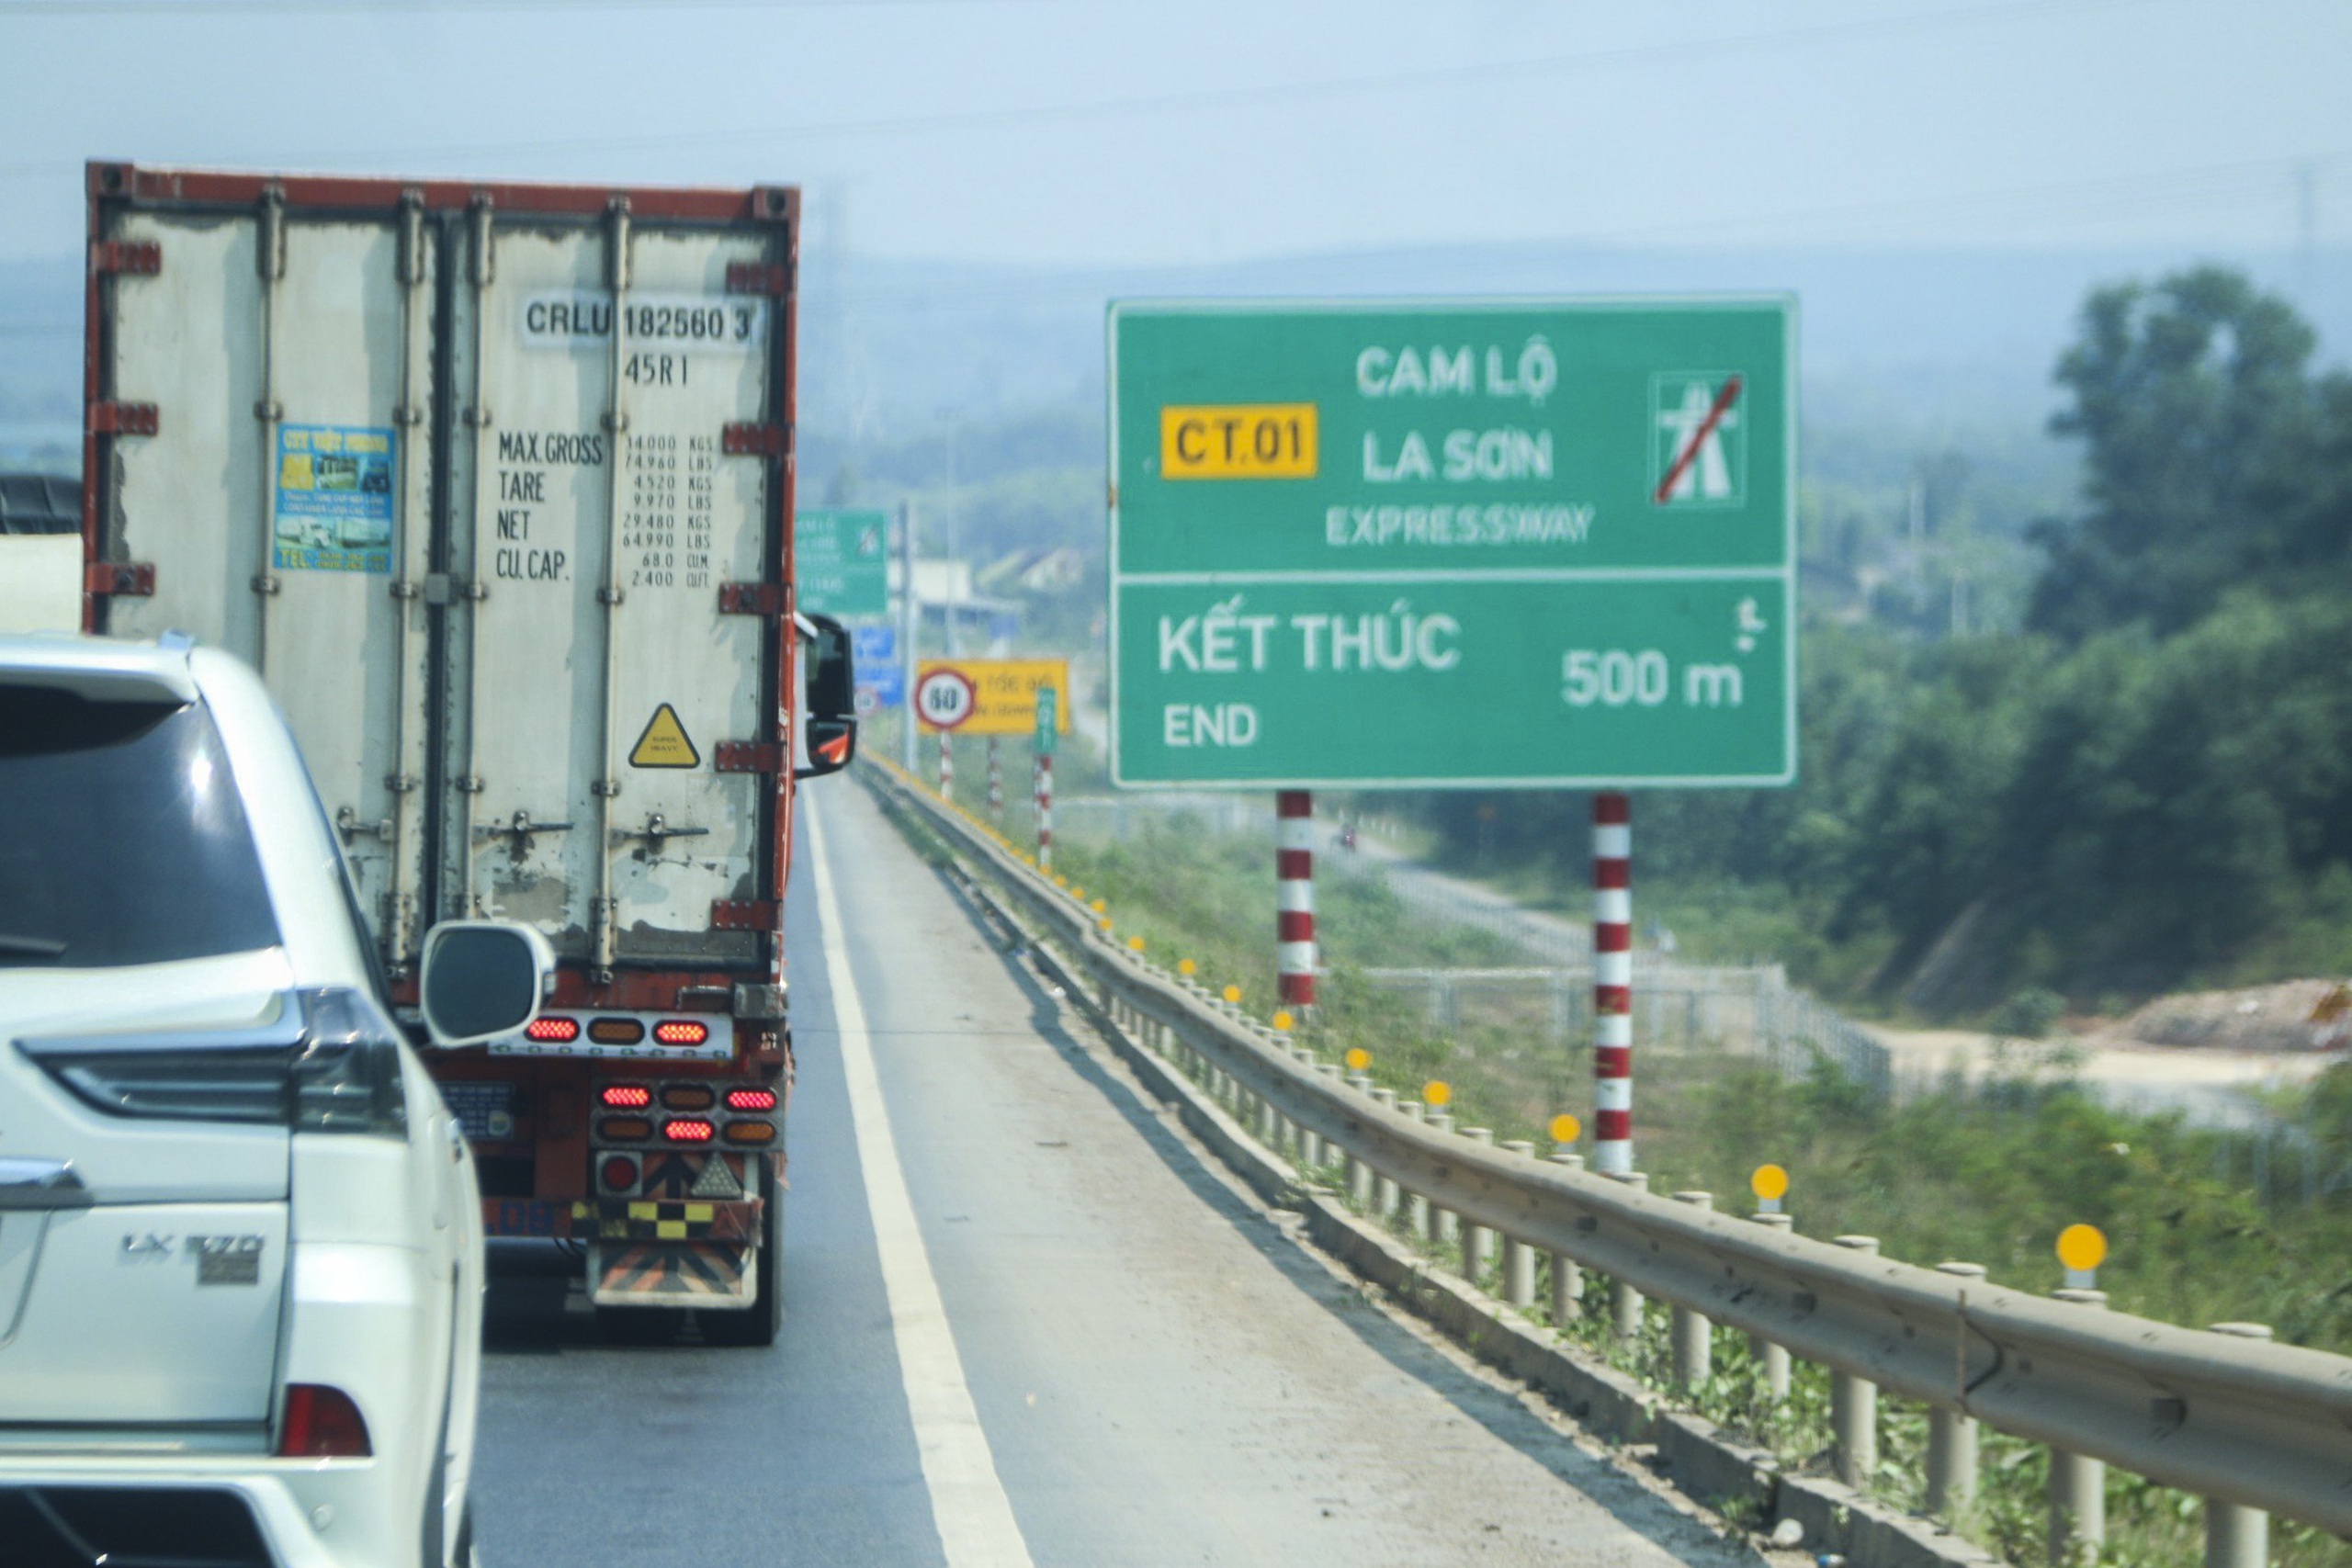 Cao tốc Cam Lộ - La Sơn trong ngày đầu cấm xe trọng tải lớn - Ảnh 13.